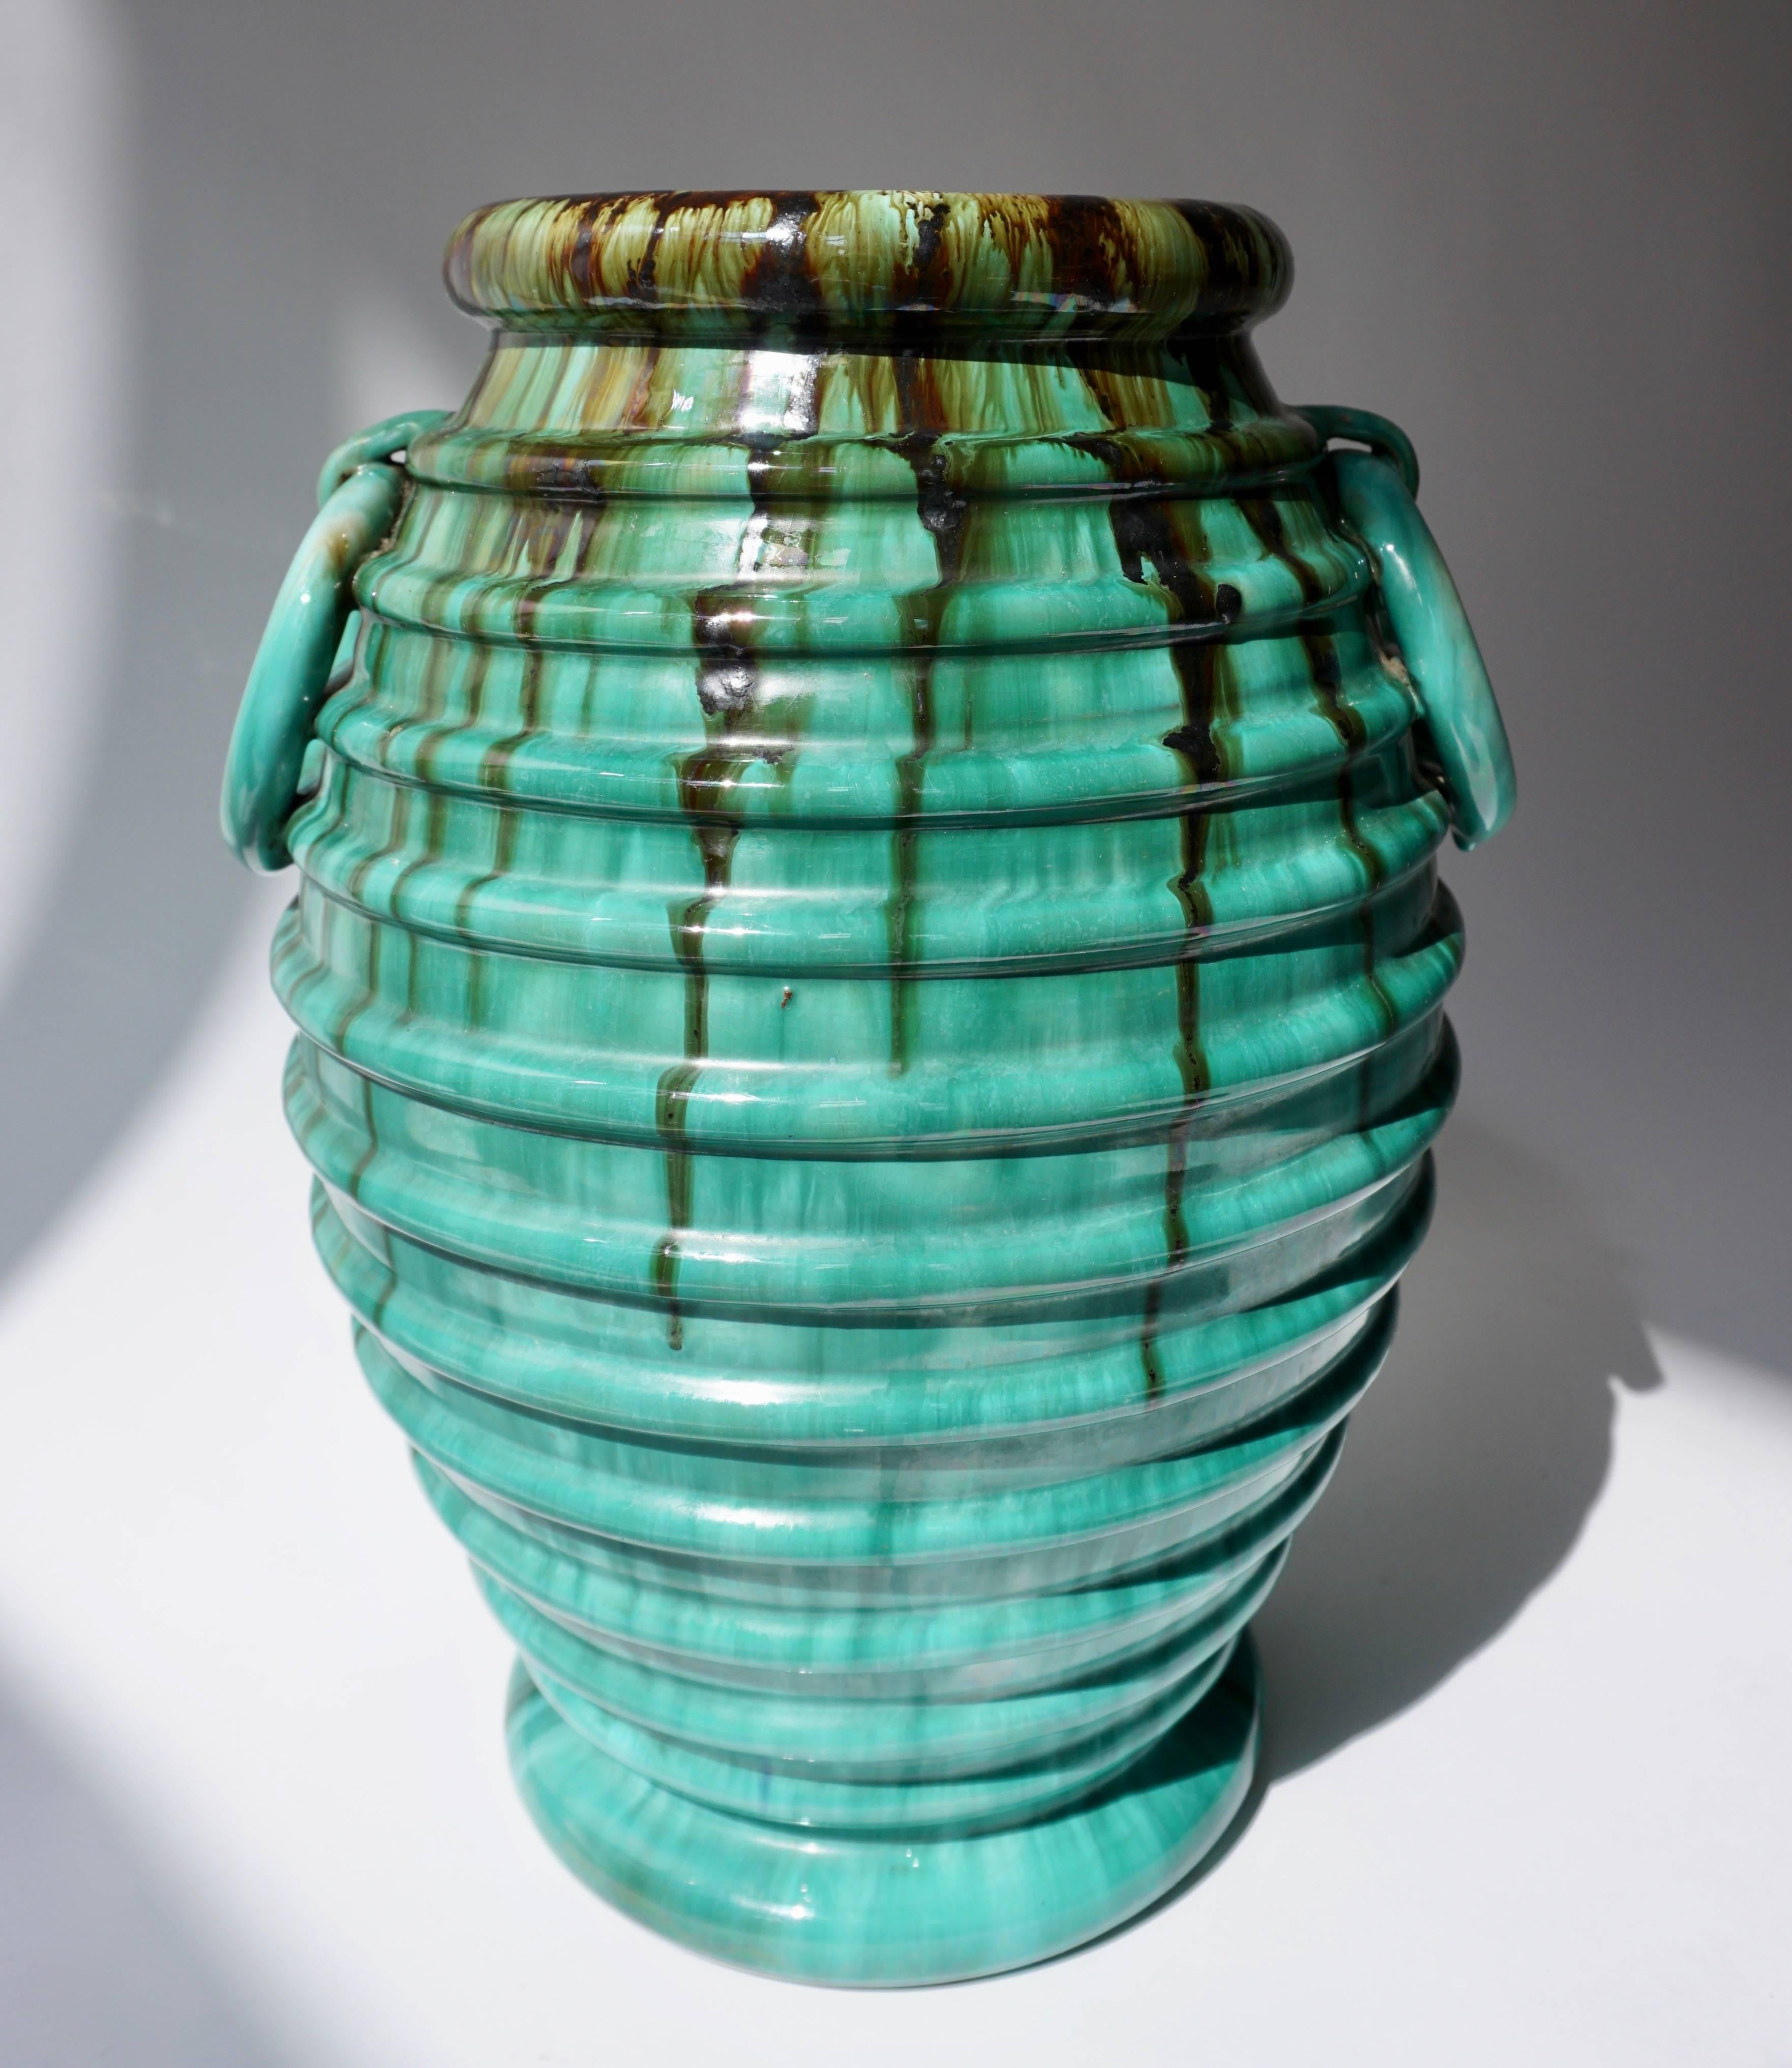 Vase aus Terrakotta.
Maße: Höhe 39 cm.